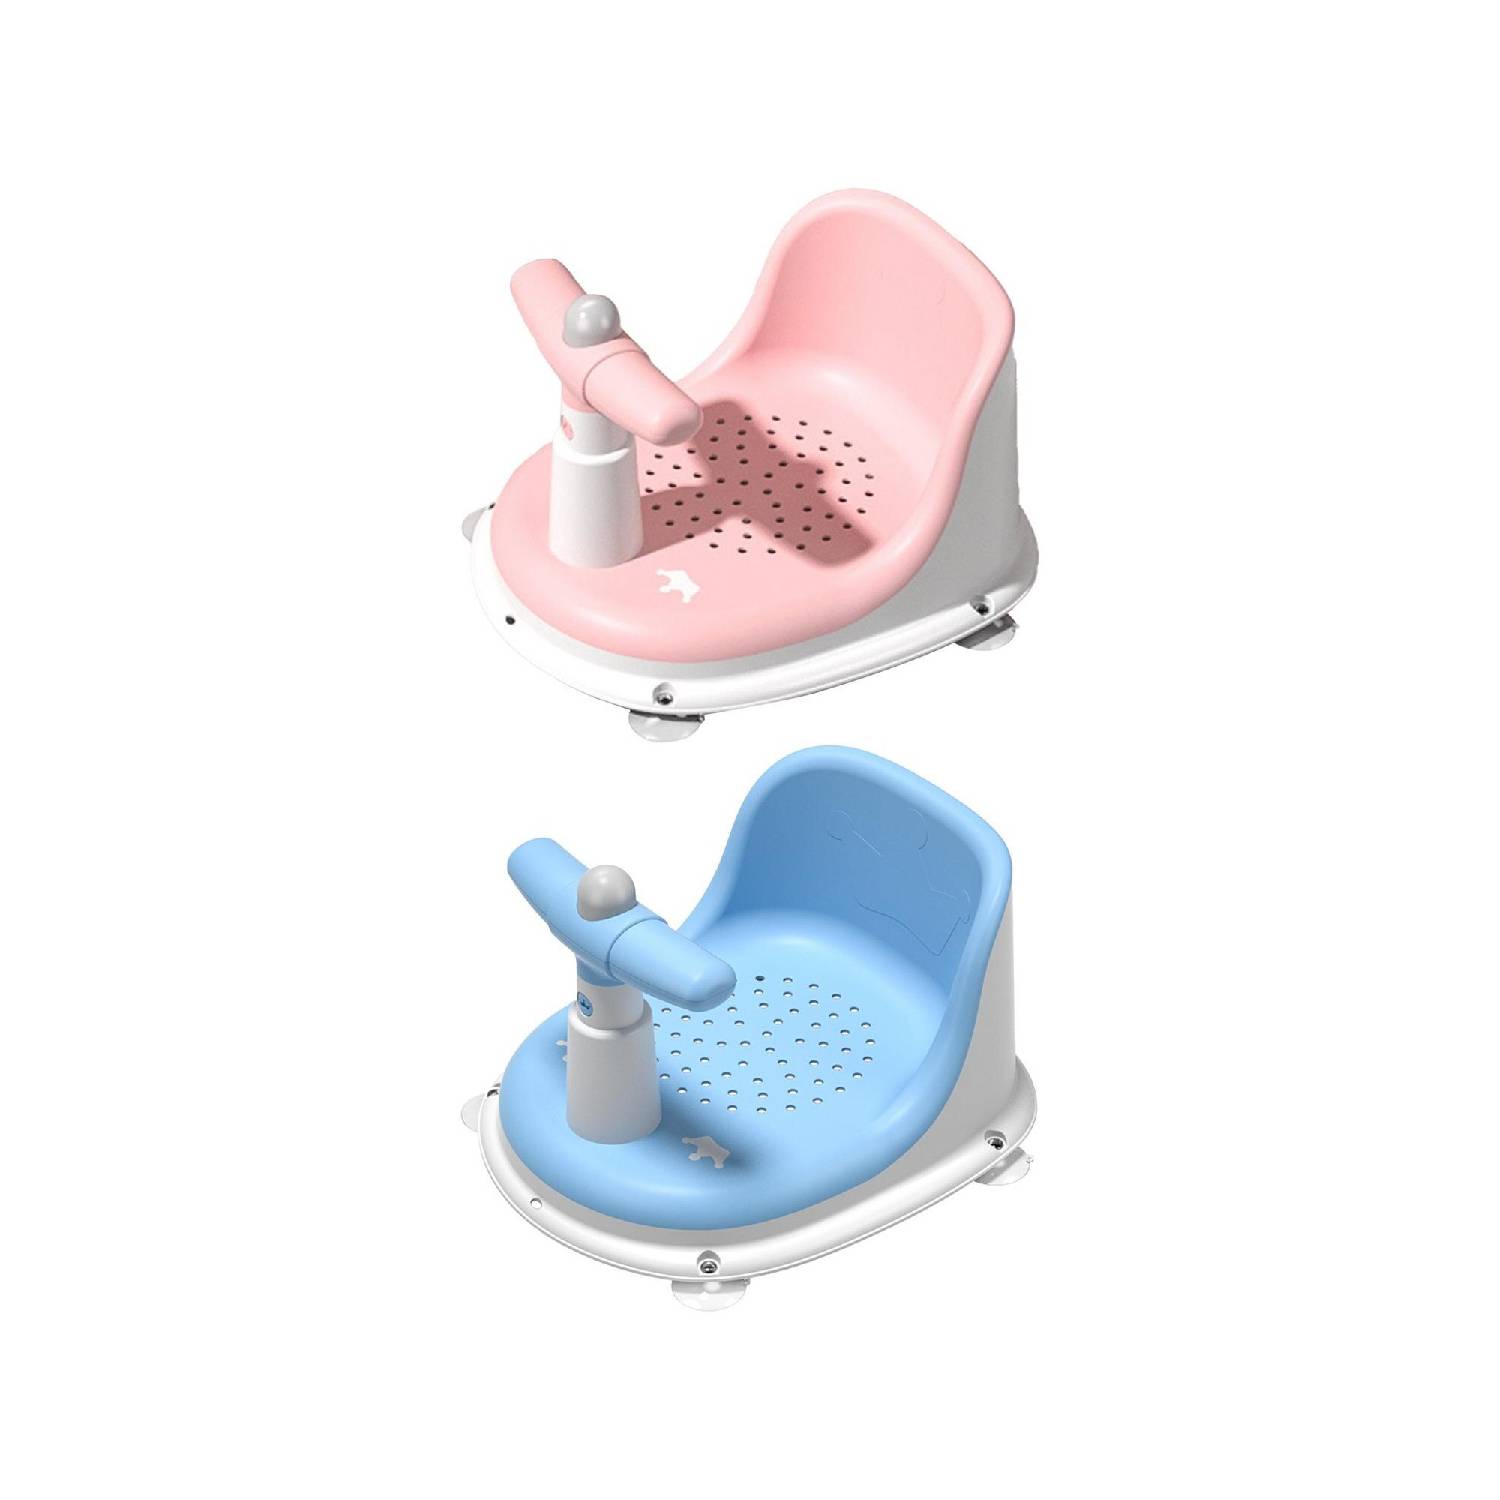 Silla de ducha para bebé recién nacido, silla de baño infantil con